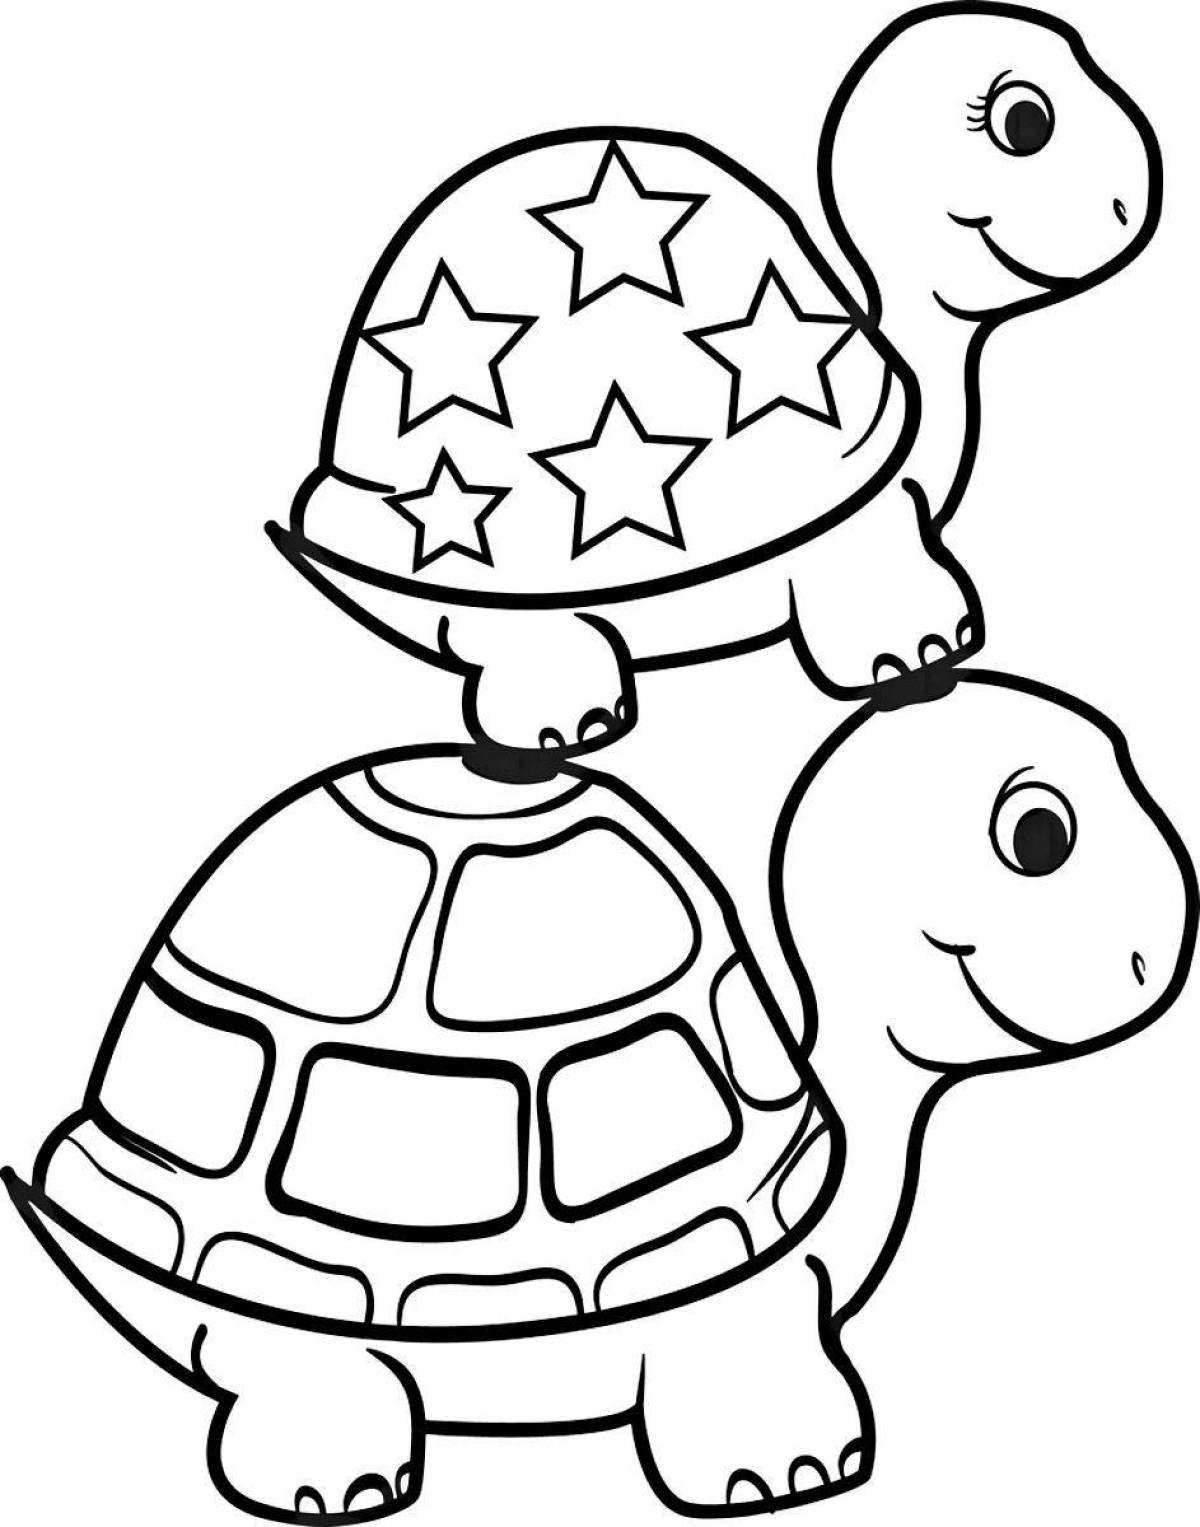 Раскраски Черепаха | Картинок-разукрашек для печати